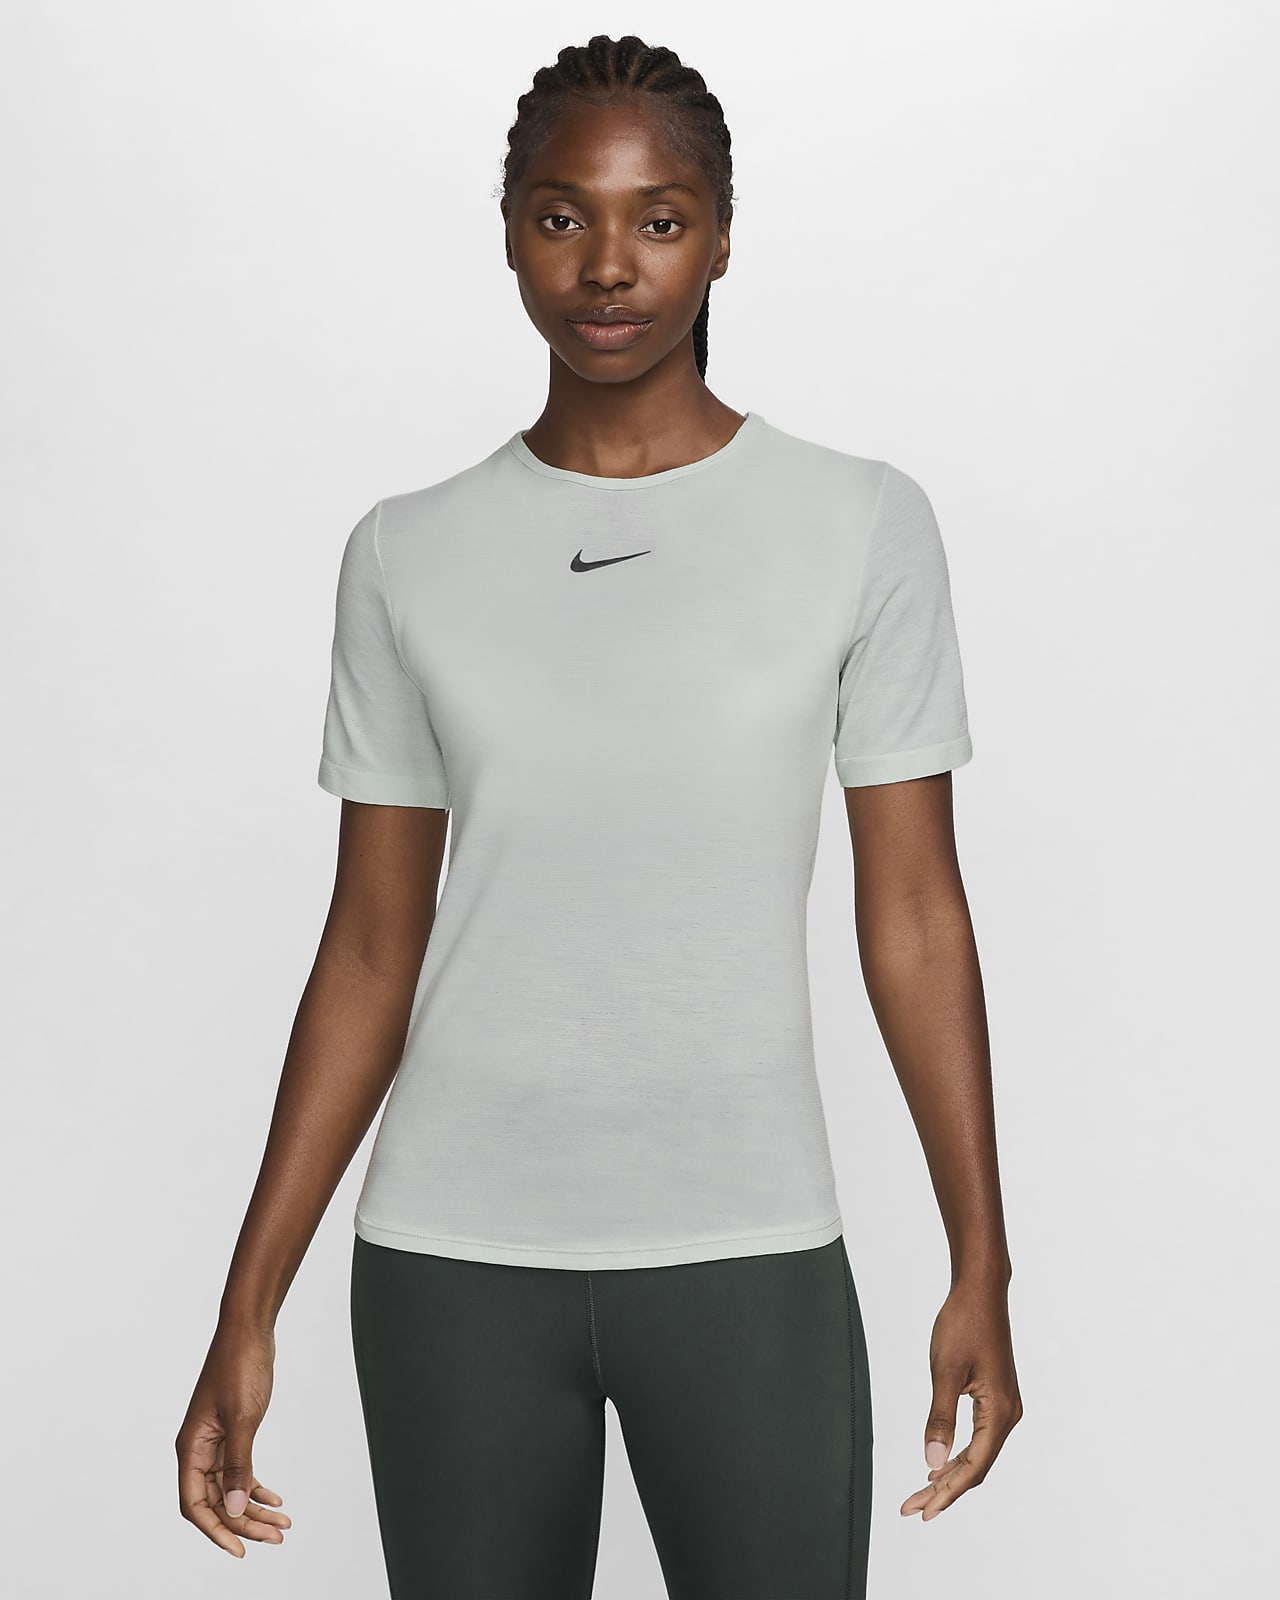 Dámské běžecké tričko Nike Dri-FIT Swift Wool s krátkým rukávem